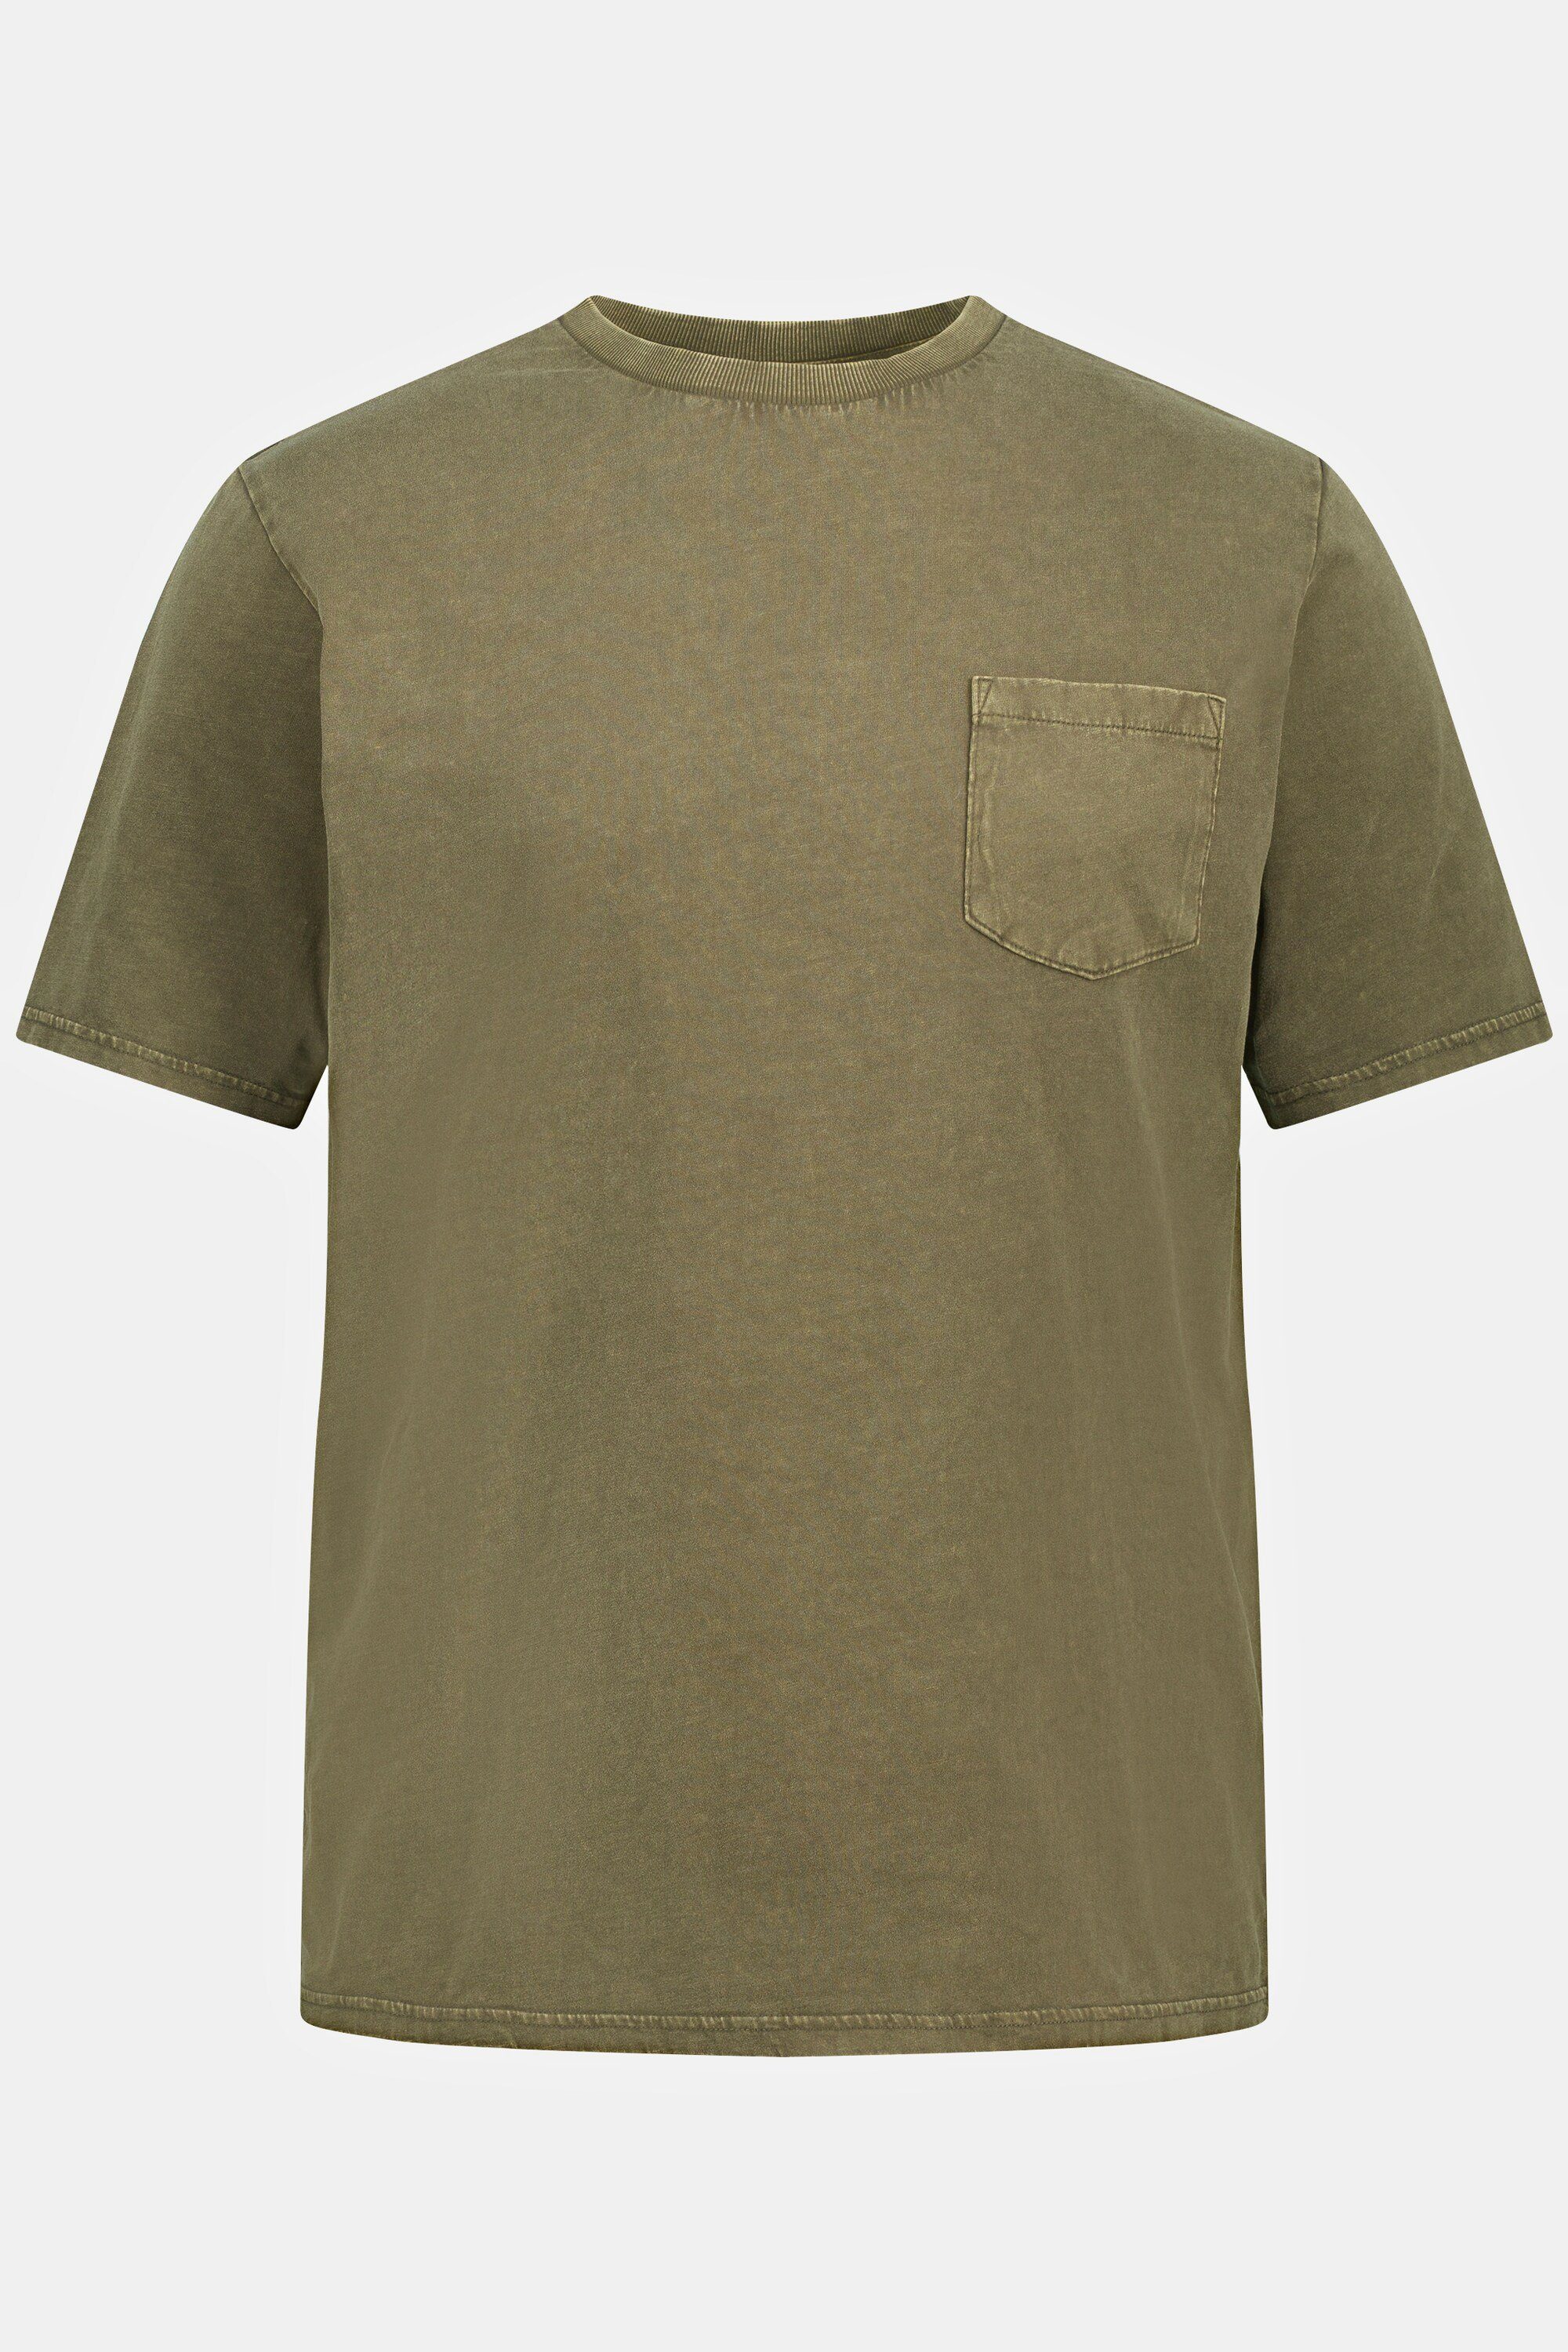 JP1880 T-Shirt T-Shirt Halbarm Brusttasche Rundhals grün